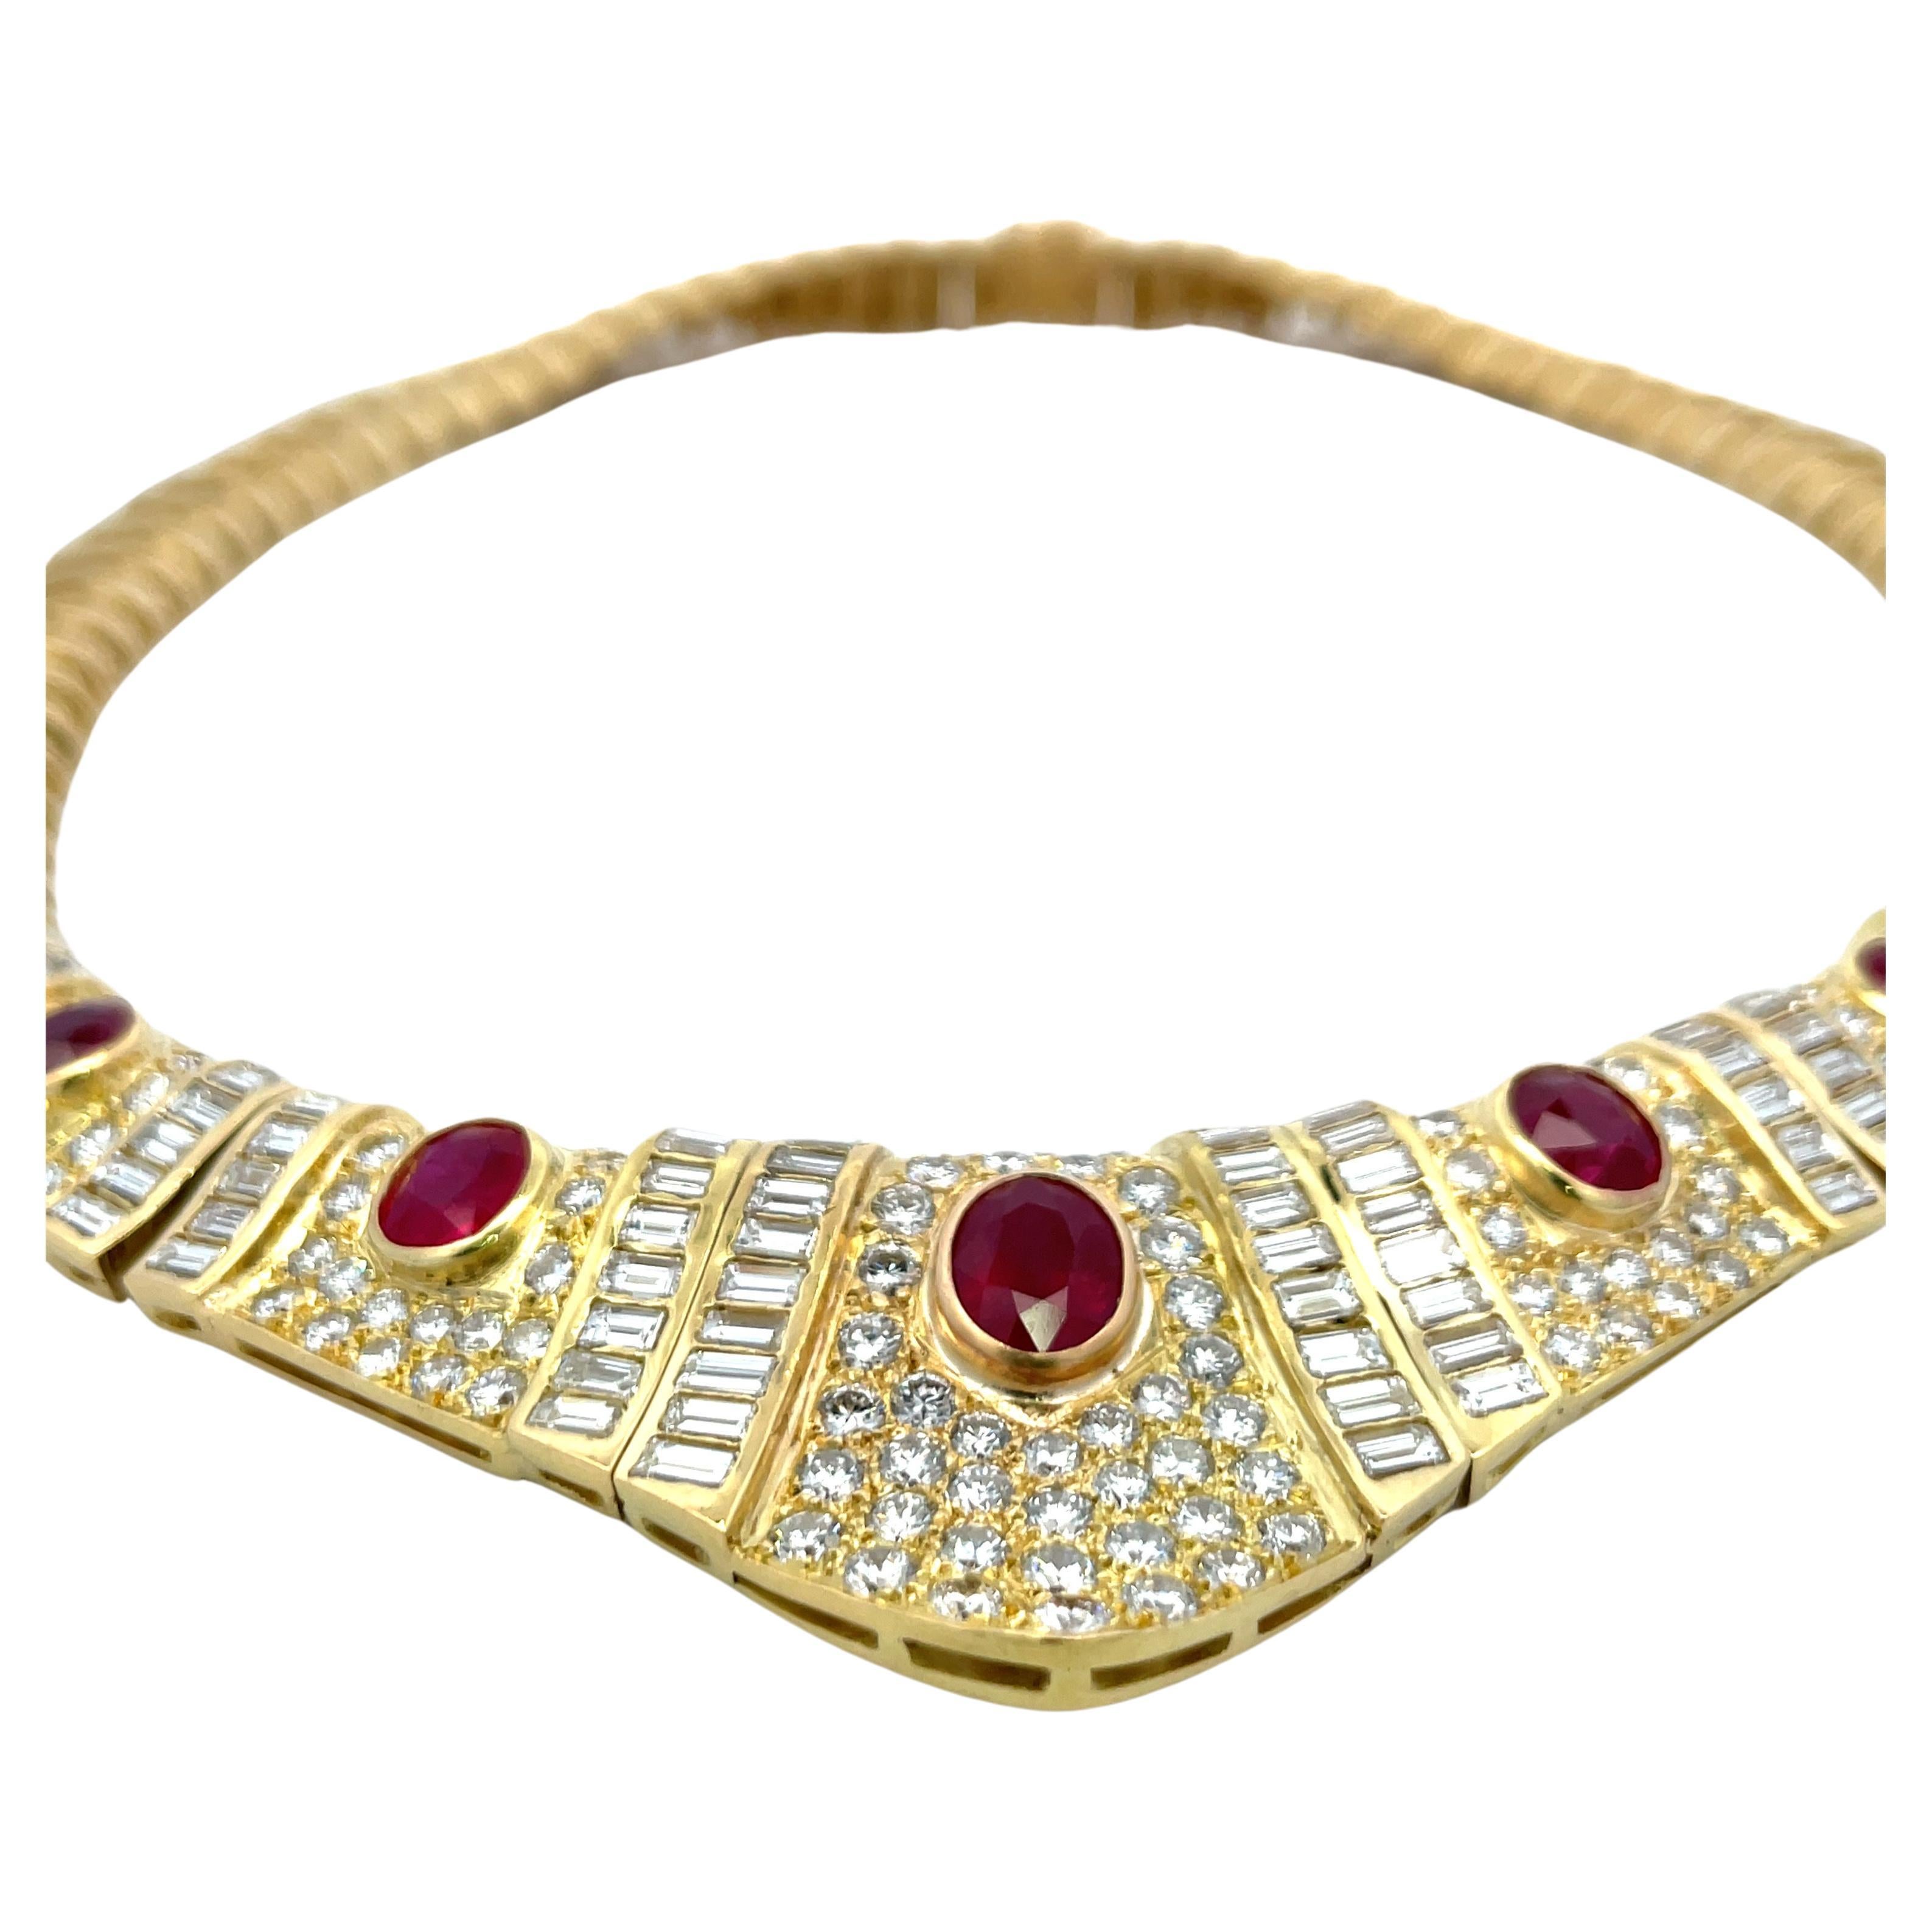 Vintage By Halskette aus 18 Karat Gelbgold mit 5 ovalen, erhitzten Burma-Rubinen von 7,50 Karat, flankiert von Baguette- und runden Brillanten von etwa 17 Karat.
